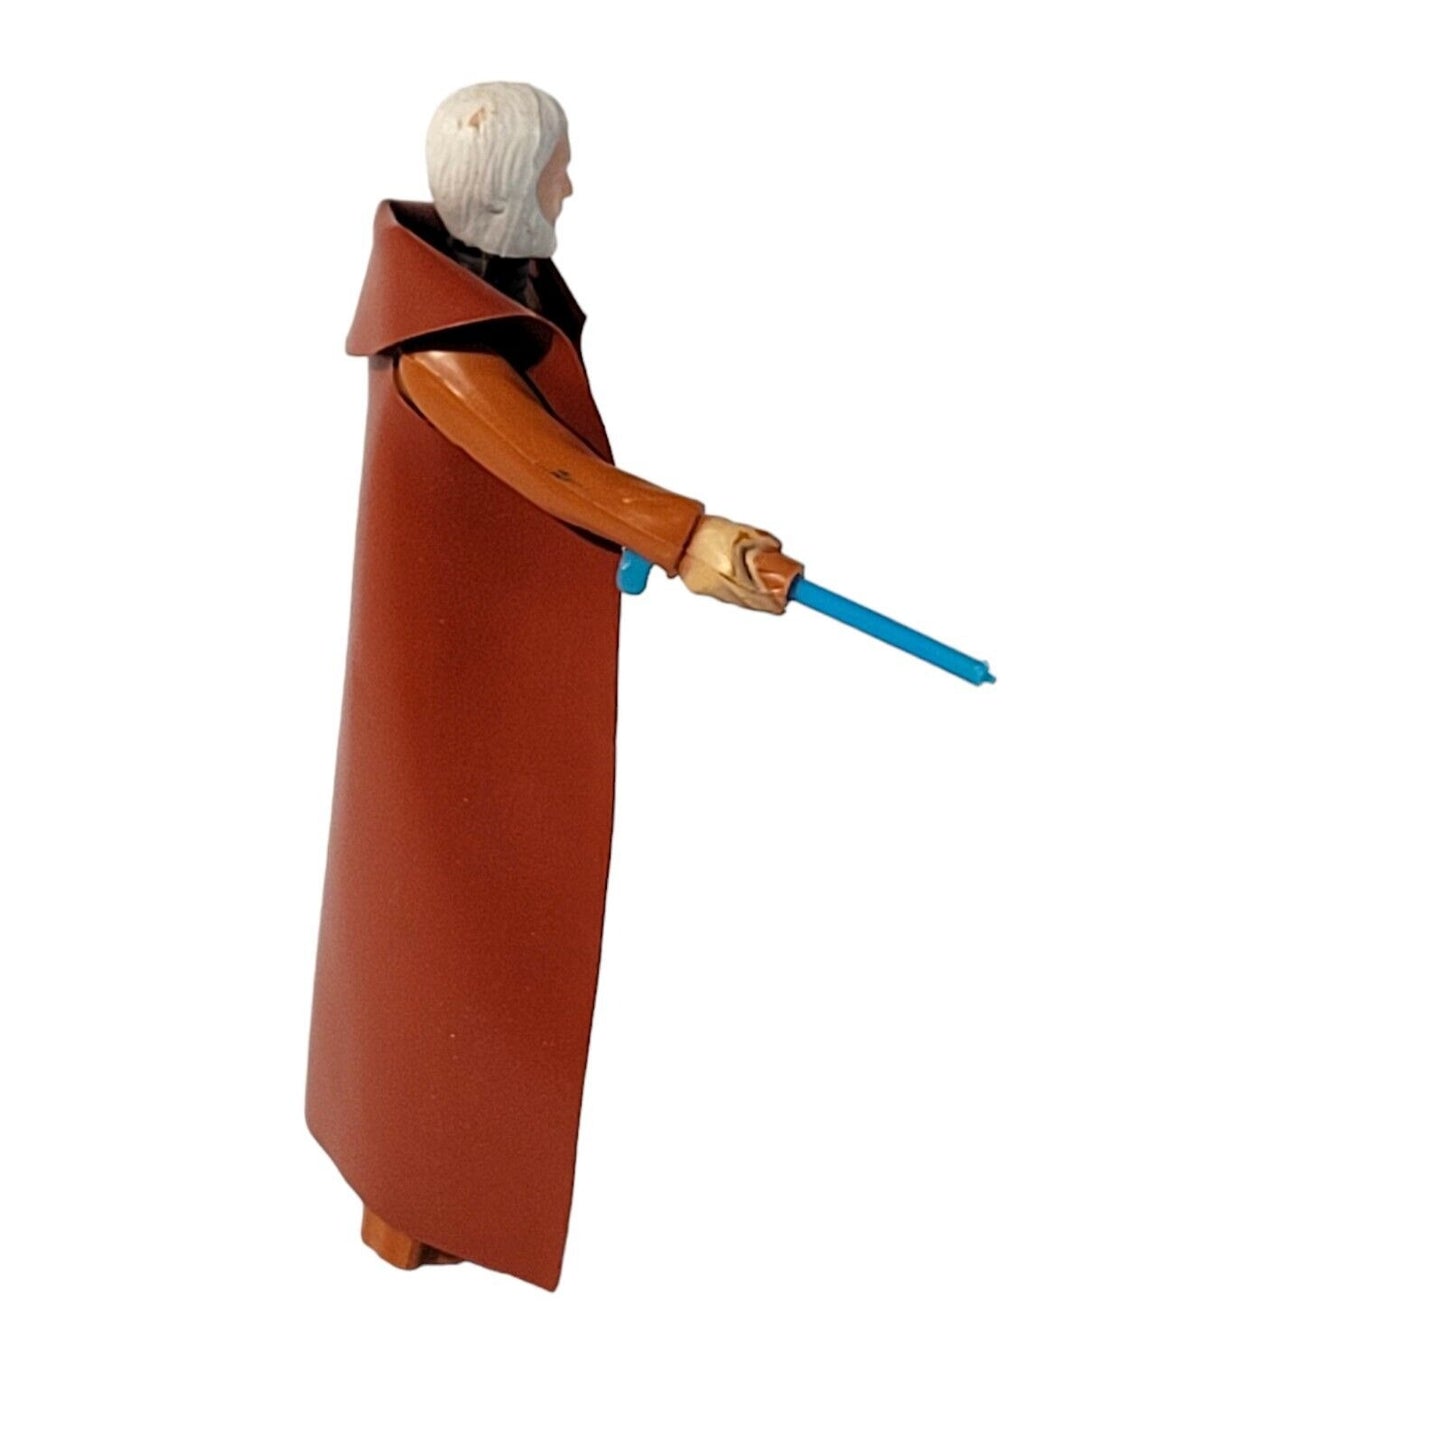 1977 Kenner Star Wars Vintage Ben Obi-Wan Kenobi with 12 Back Cardback